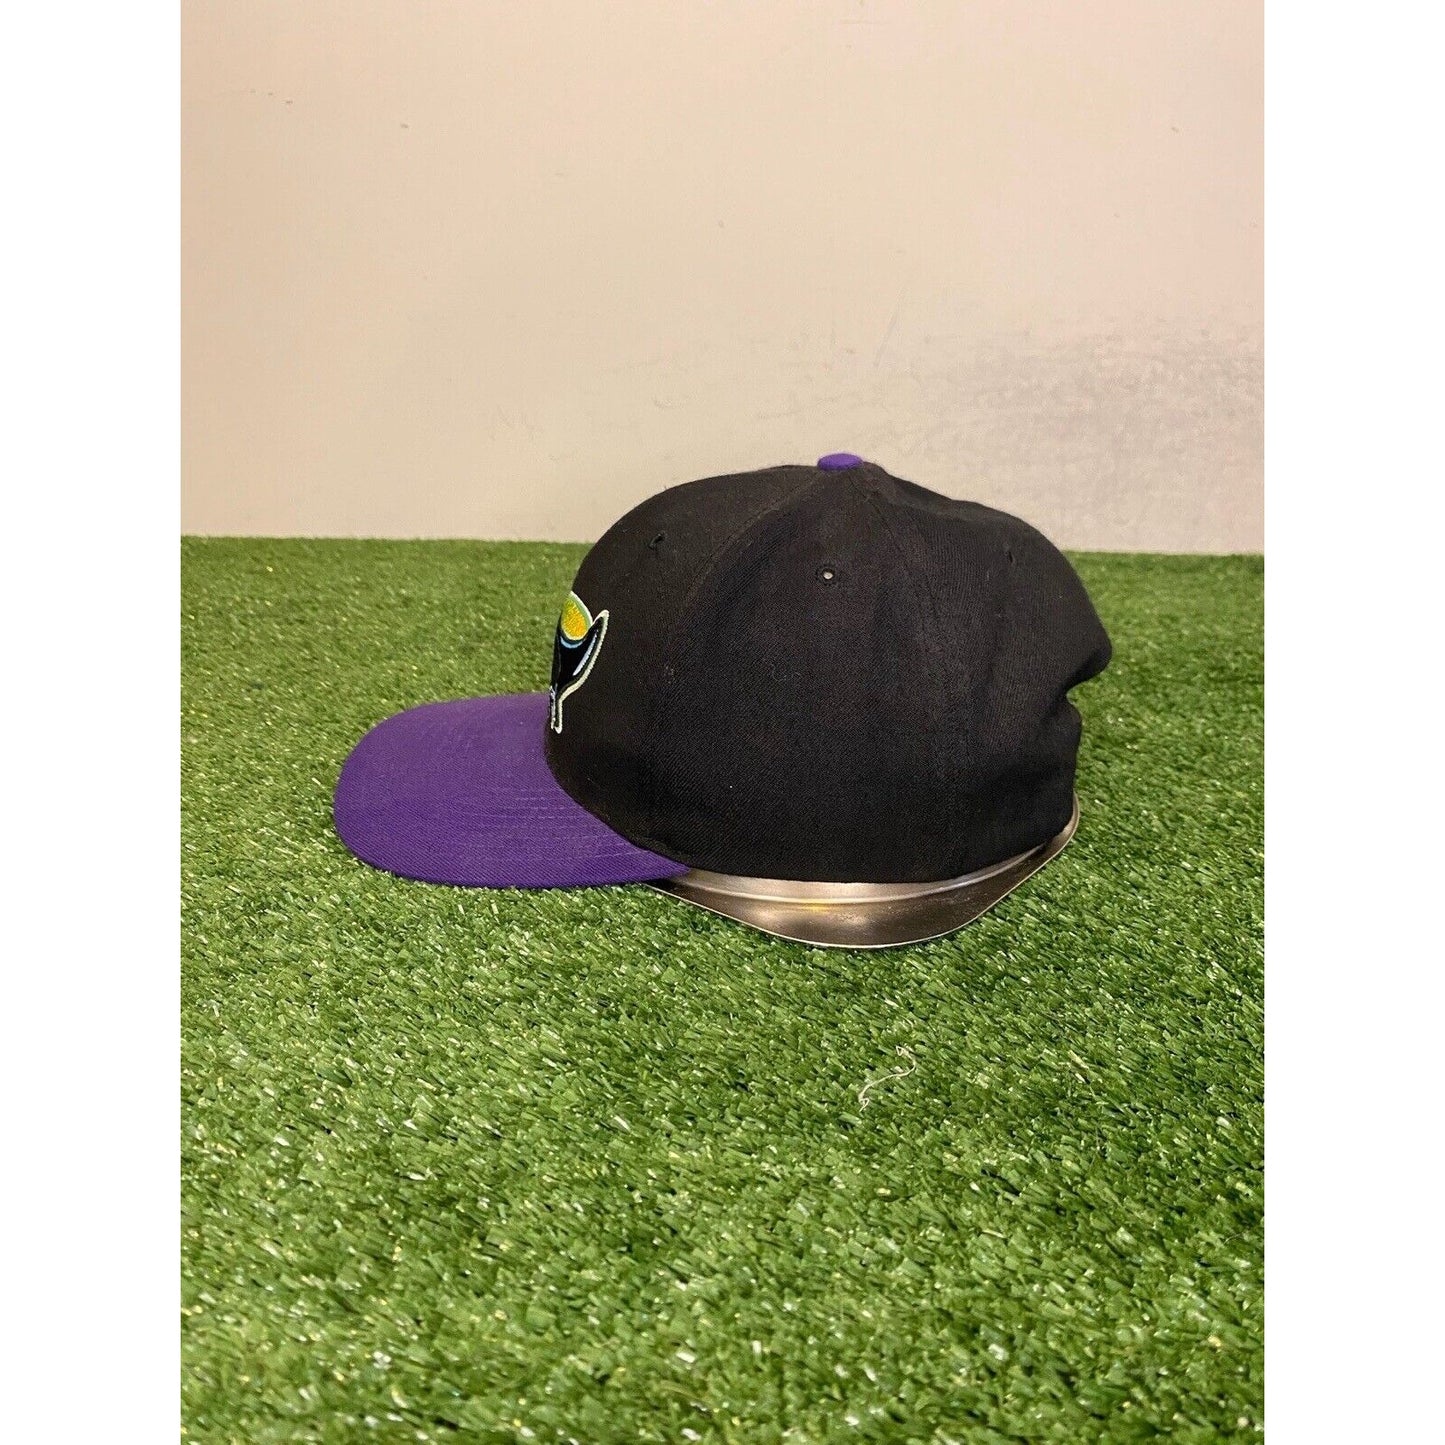 Vintage Tampa Bay Rays hat cap snap back black purple black 90s mens wool